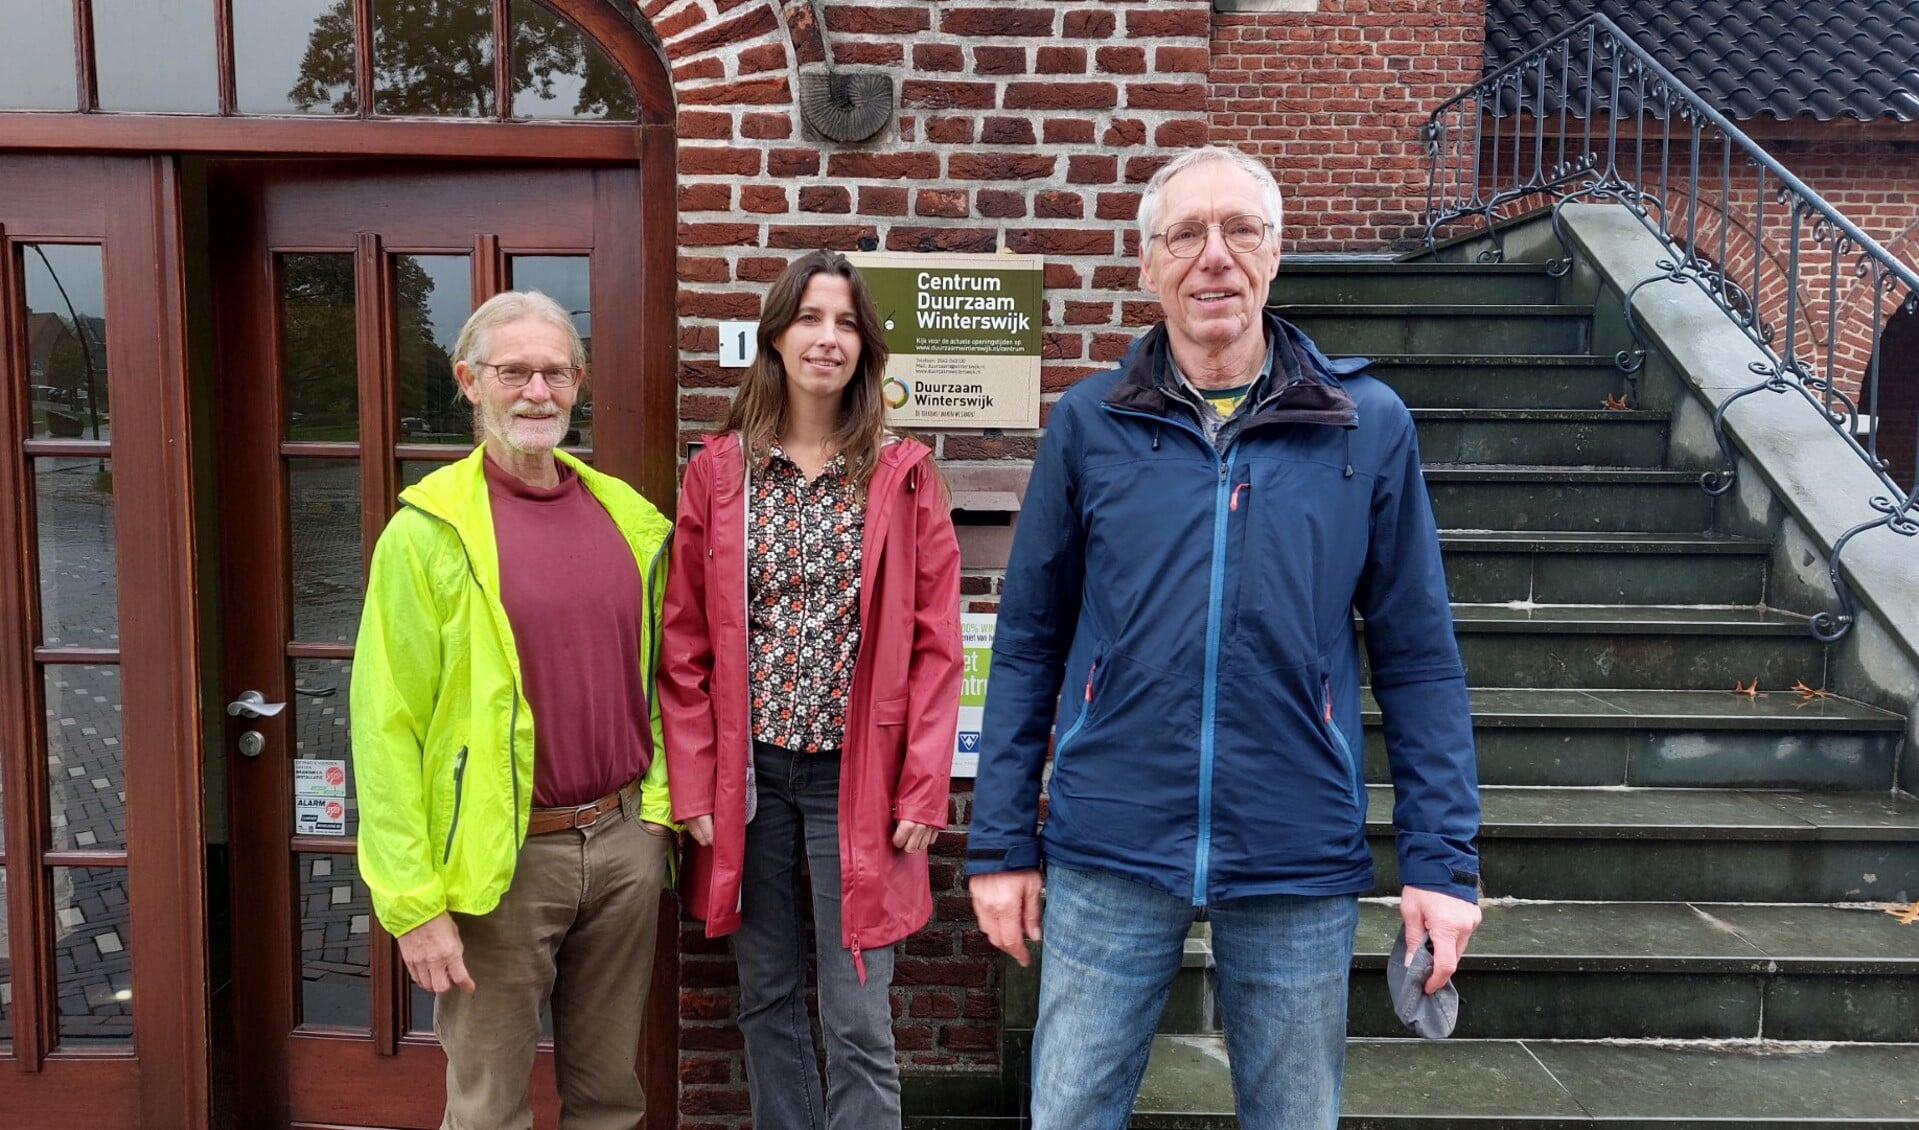  Tonny Stoltenborg (l), Anna-Lena Penninx en Ab Nijman voor het Centrum Duurzaam Winterswijk. Foto: Han van de Laar